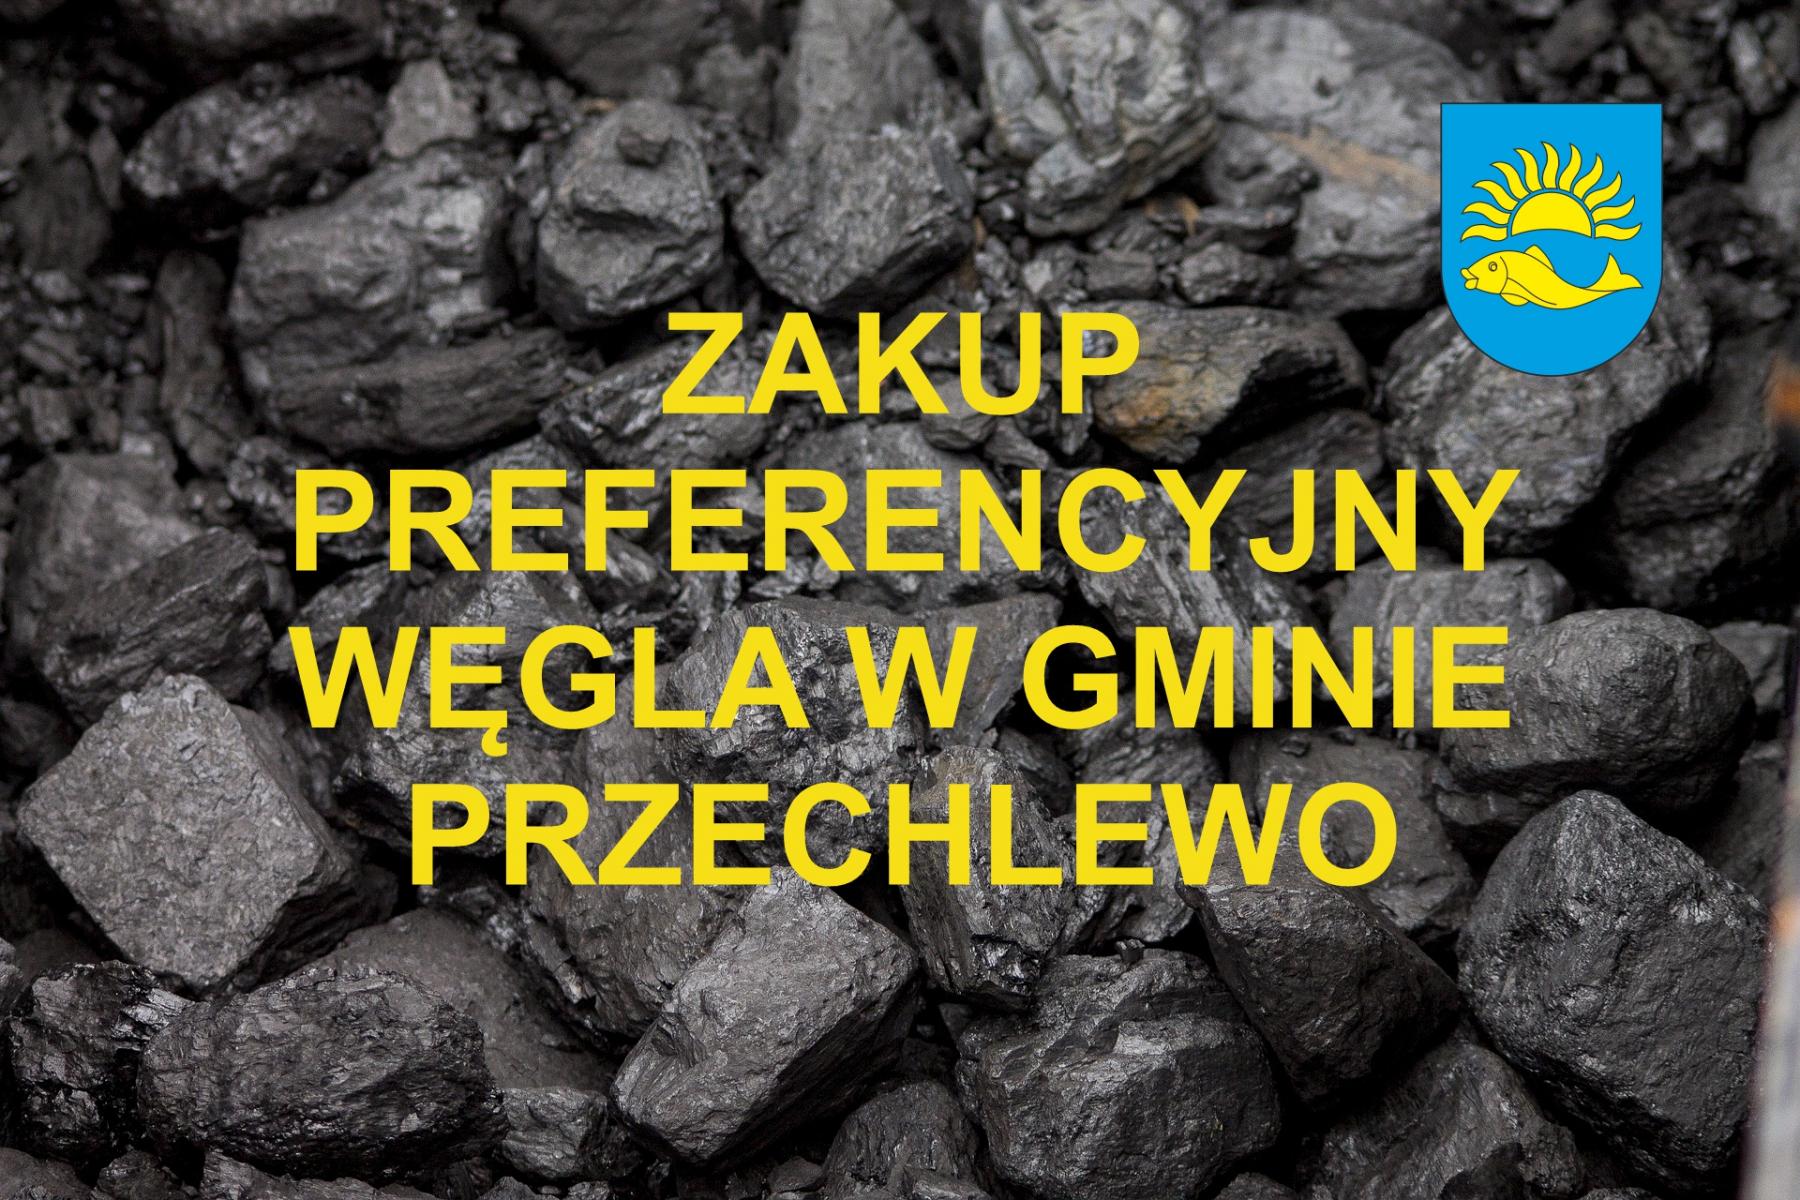 Zakup preferencyjny węgla w gminie Przechlewo - można składać wnioski